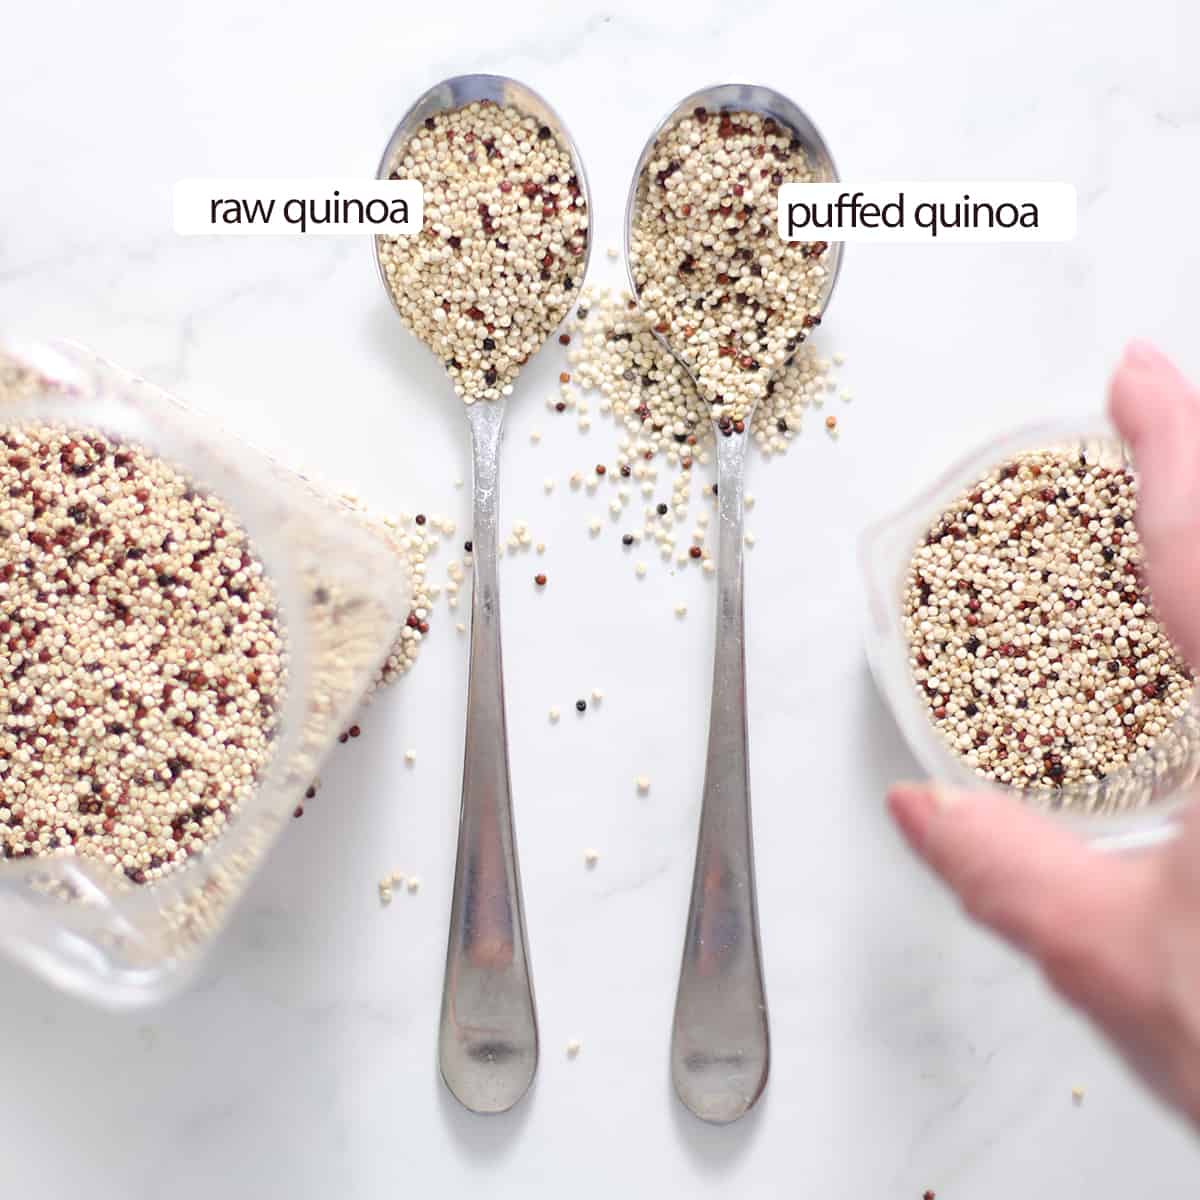 comparison of raw vs popped quinoa